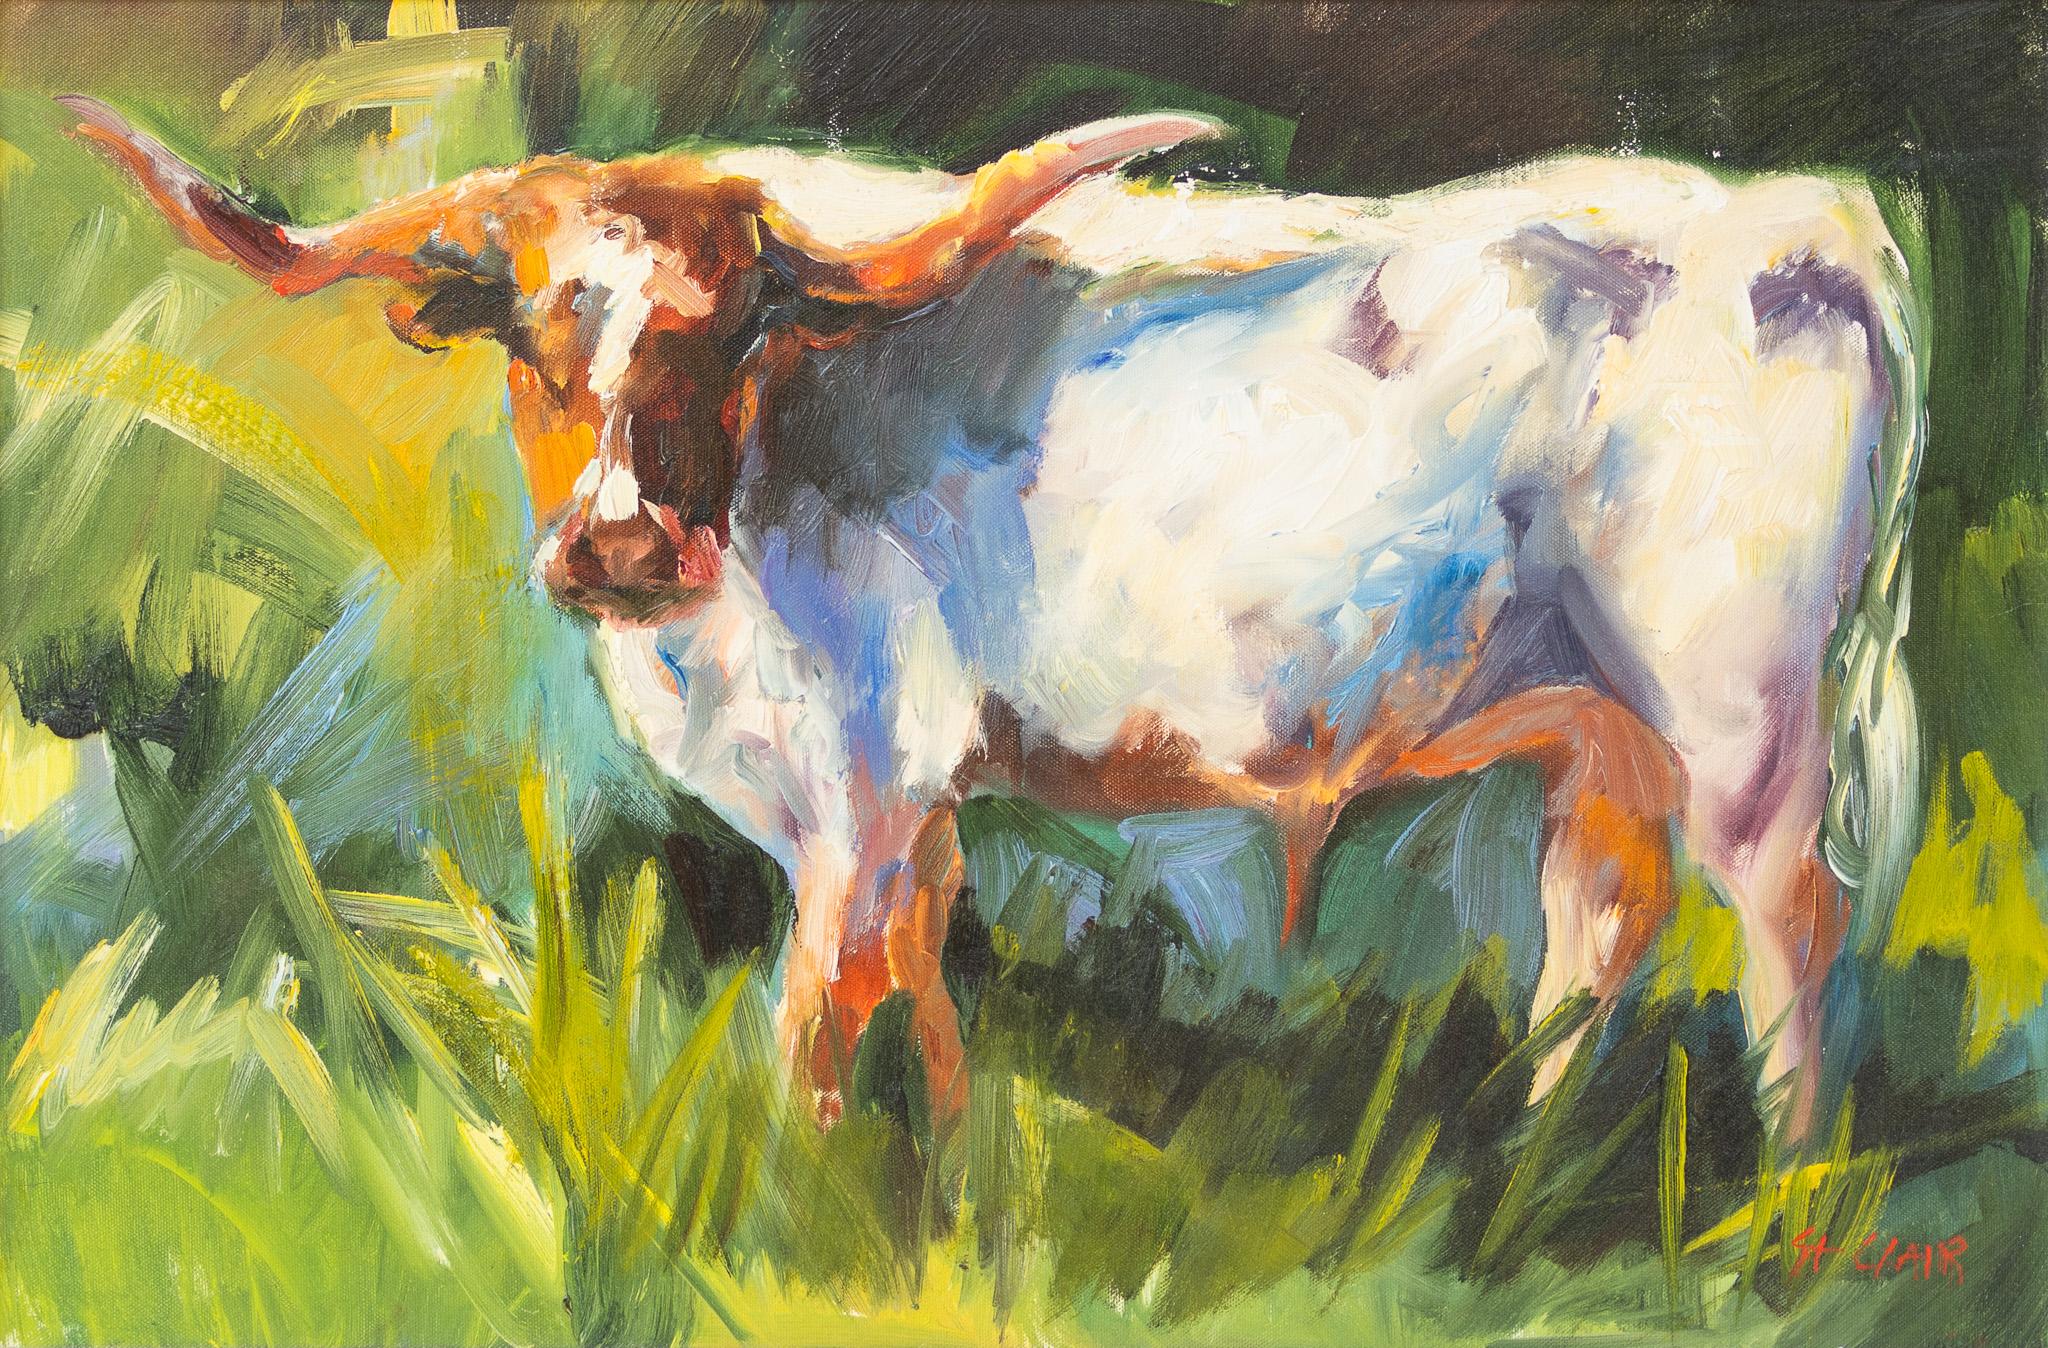 Animal Painting Linda St. Clair - "Longhorn dans un pâturage" Scène de bétail impressionniste